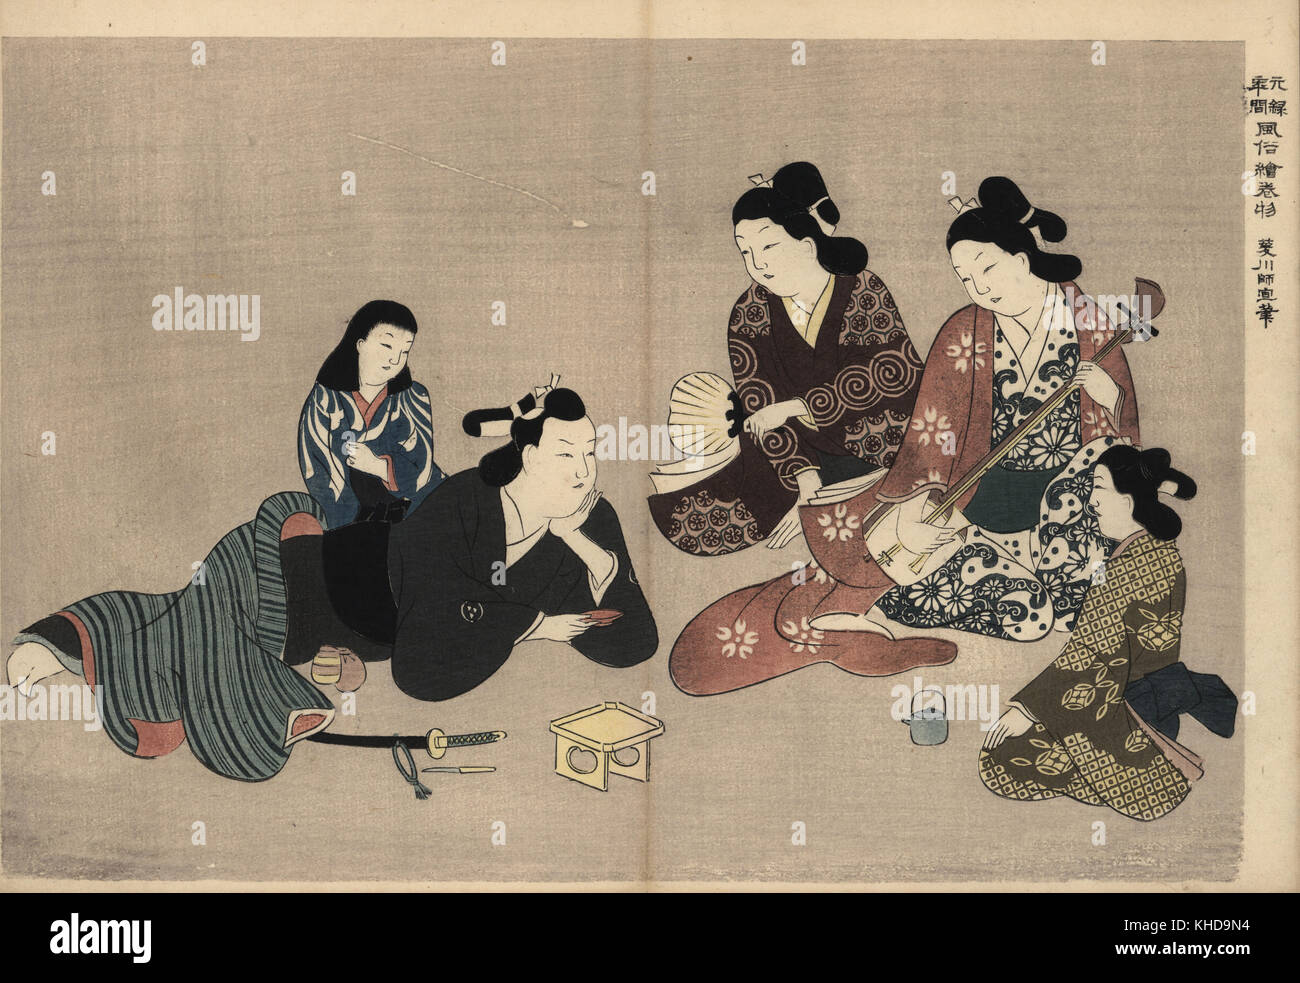 Les courtisanes jouant shamisen pour connaître d'un client dans le saké boisson plaisir trimestres. Femme de Kamuro servir bien. Moronobu Hishikawa par gravure sur bois (1618-1694) de Fuzoku Emakimono, rouleau de la commerce de l'eau Tokyo, réimpression vers 1880. Banque D'Images